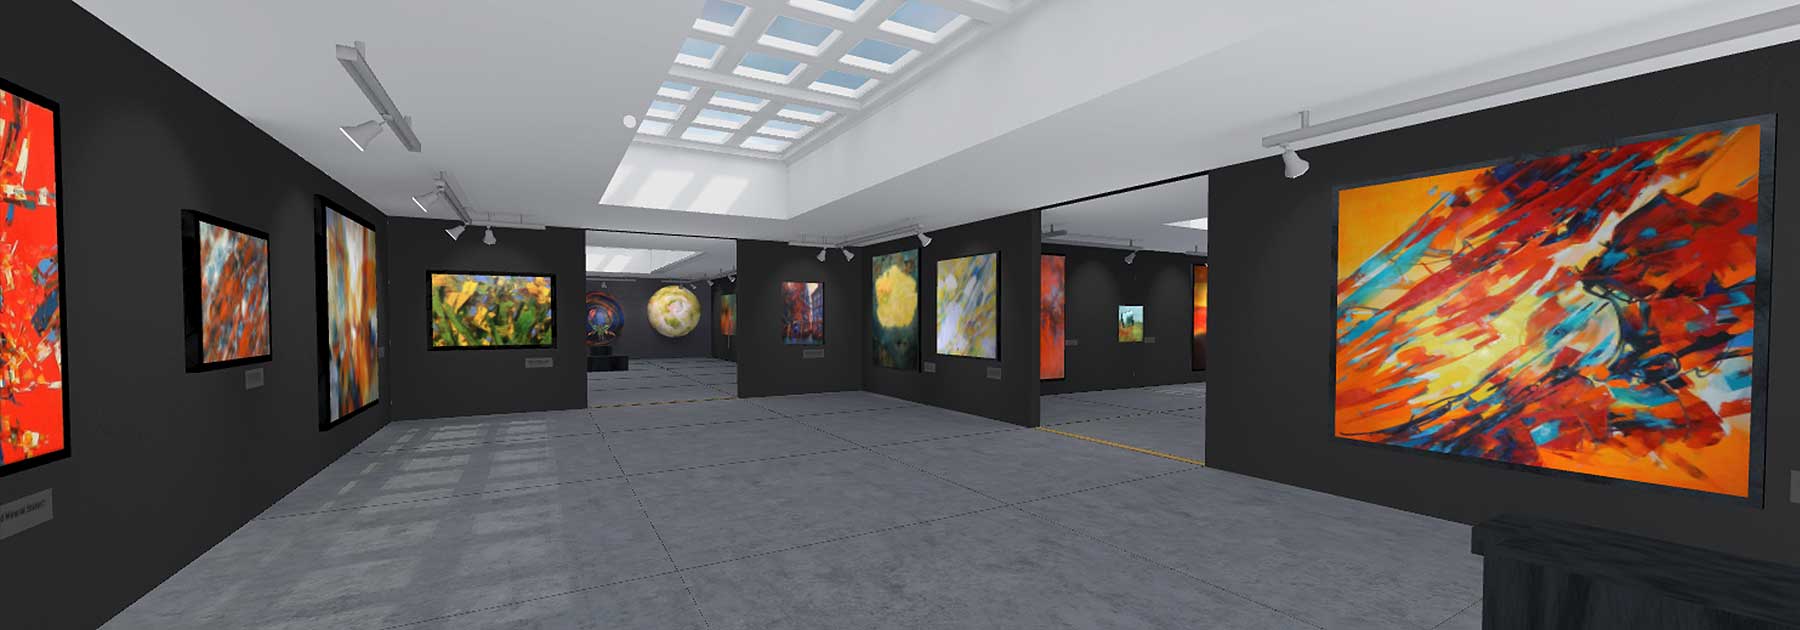 Peinture à l'huile sur le Web en VR, Galerie art en réalité virtuelle, Expo VR, VR, exposition par jc Tanguy